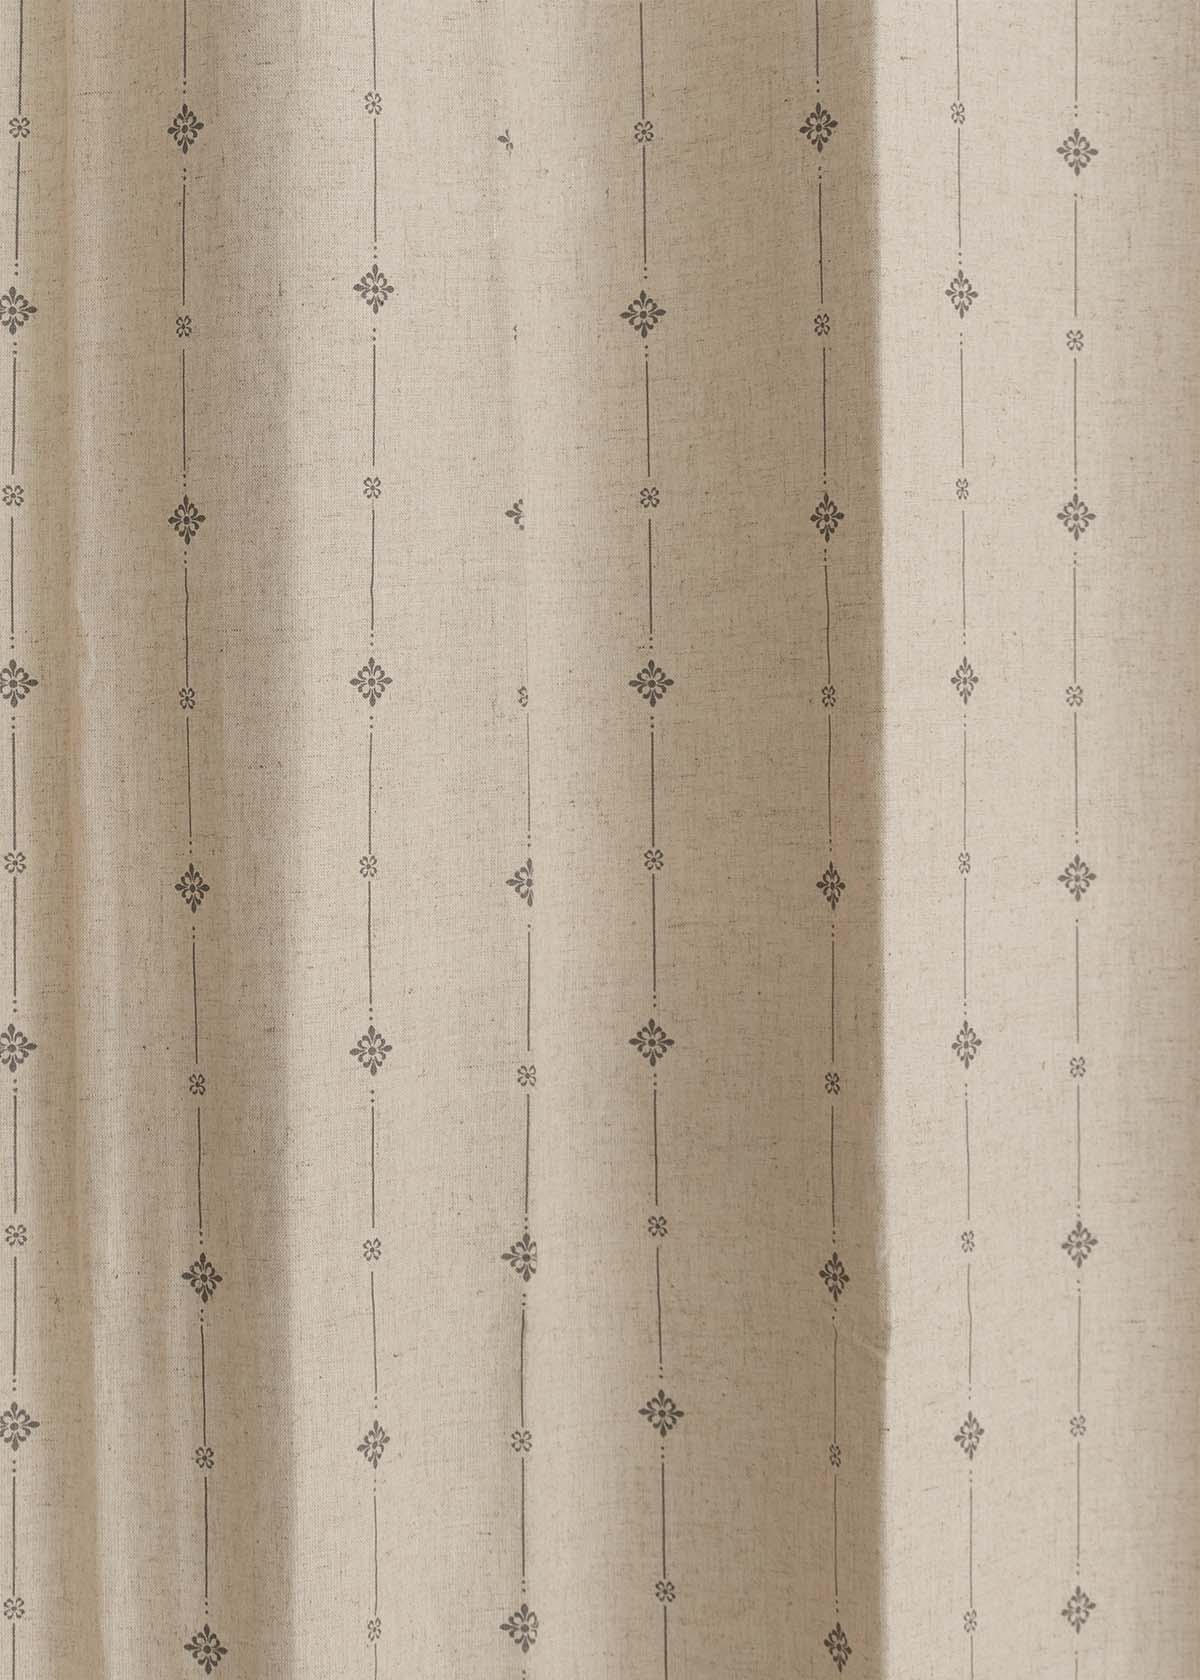 Tulsi Linen printed linen Fabric - Beige